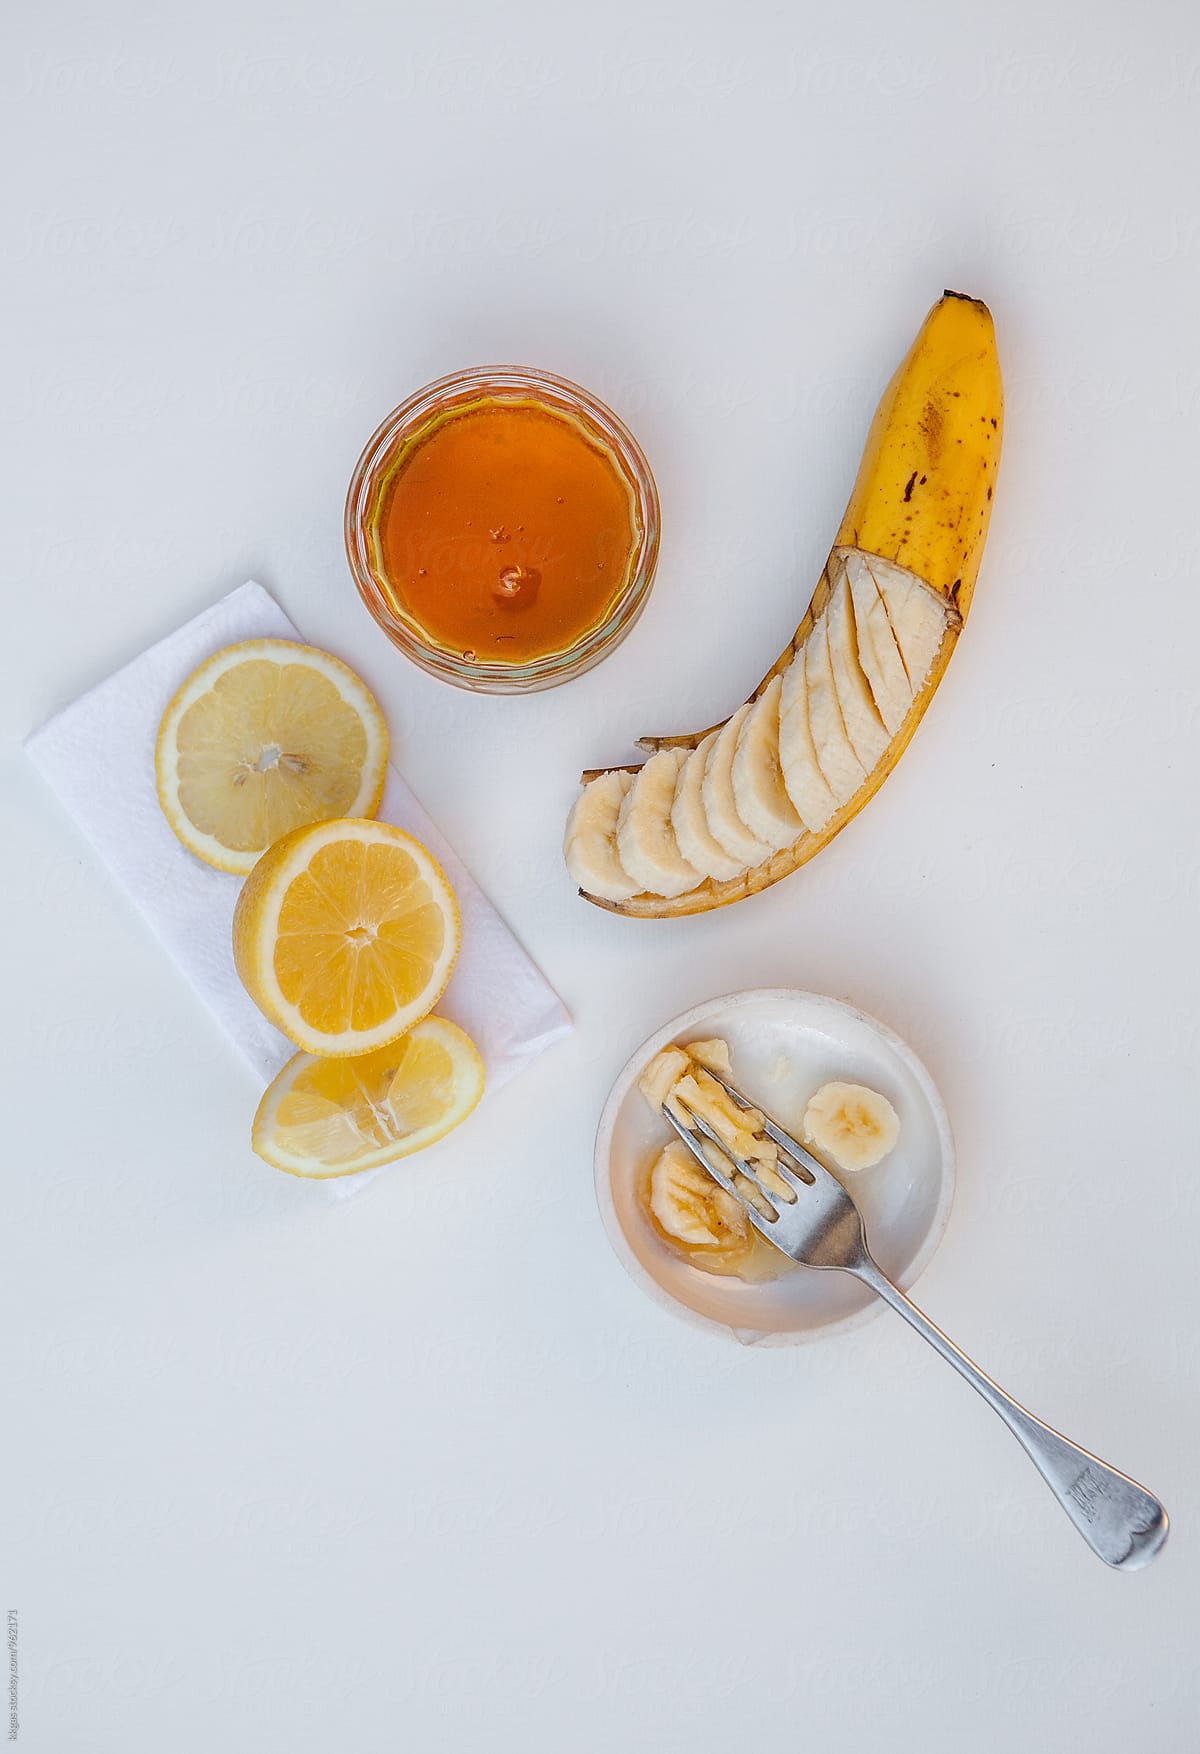 Homemade, natural Banana honey and lemon face mask